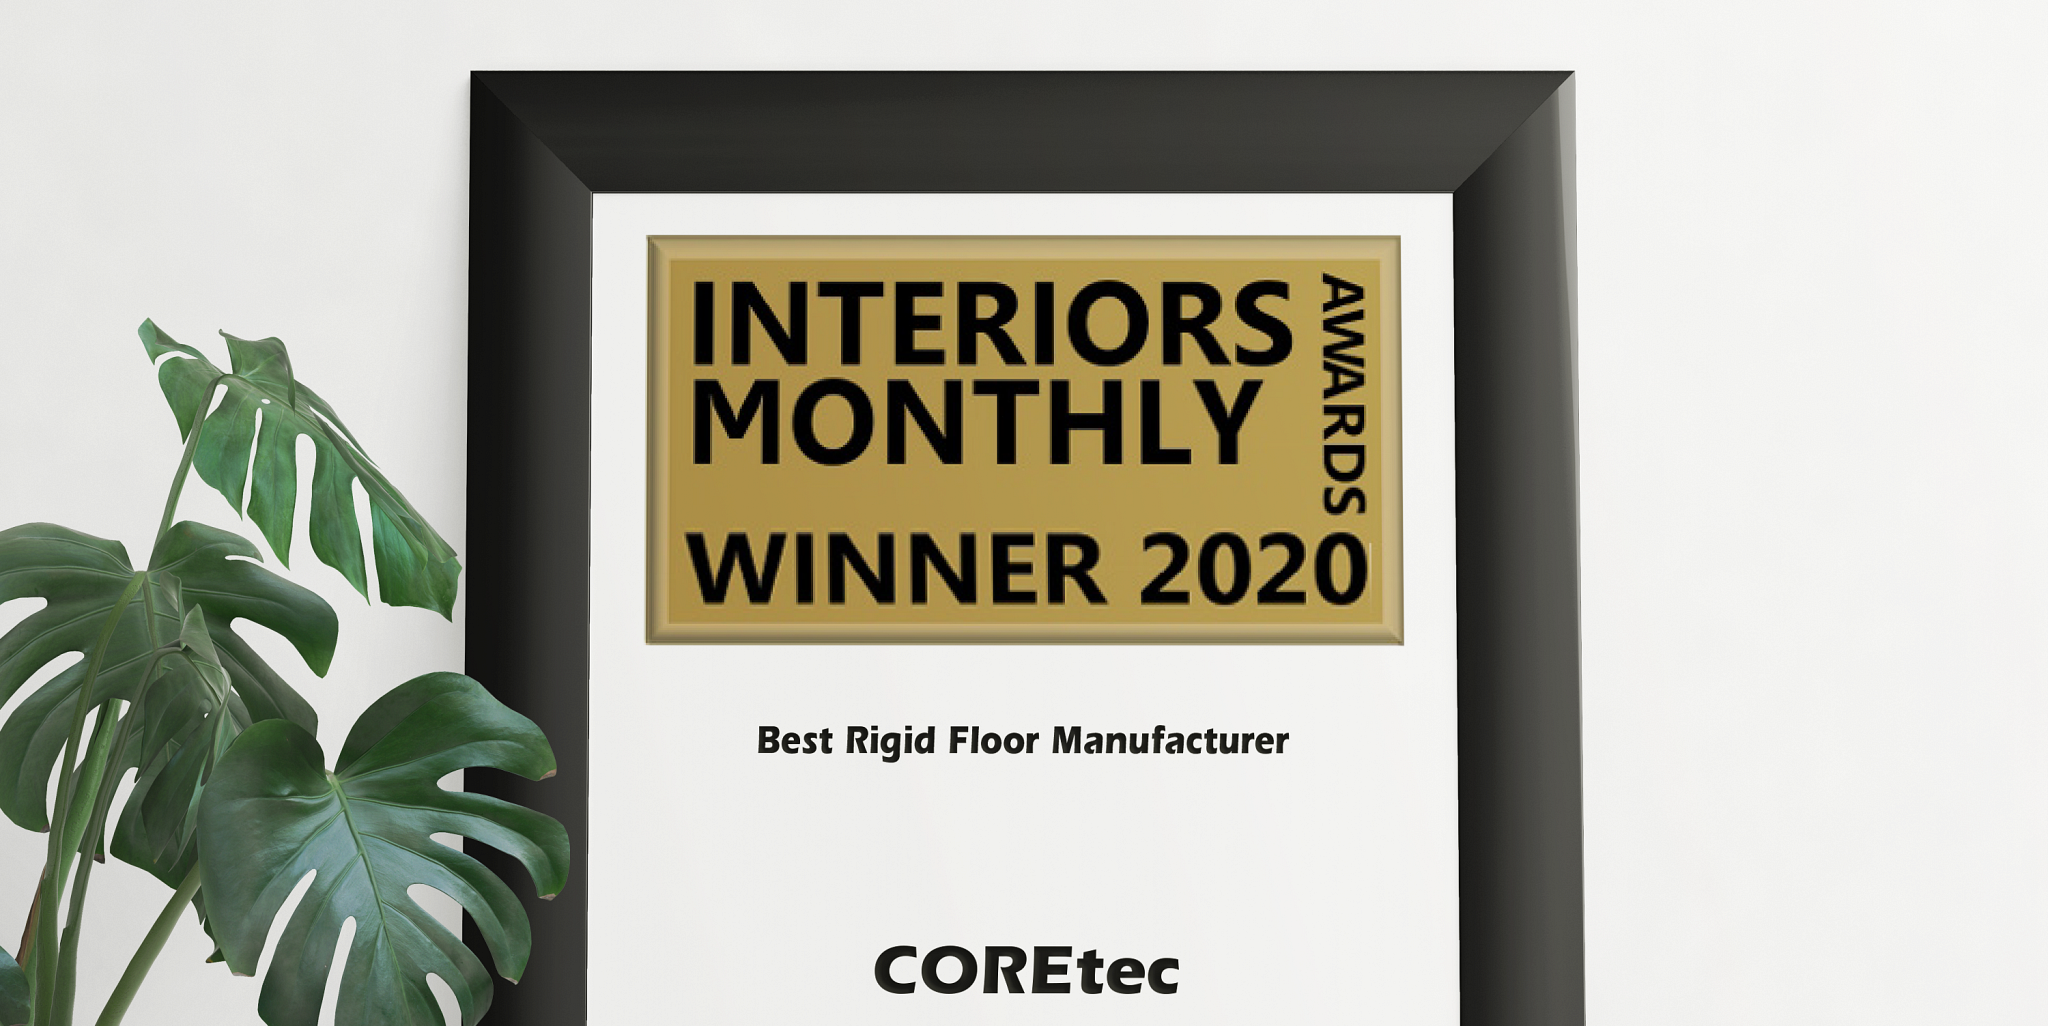 ¡Estamos orgullosos de anunciar que hemos sido galardonados con el Interiors Monthly Award en la categoría 